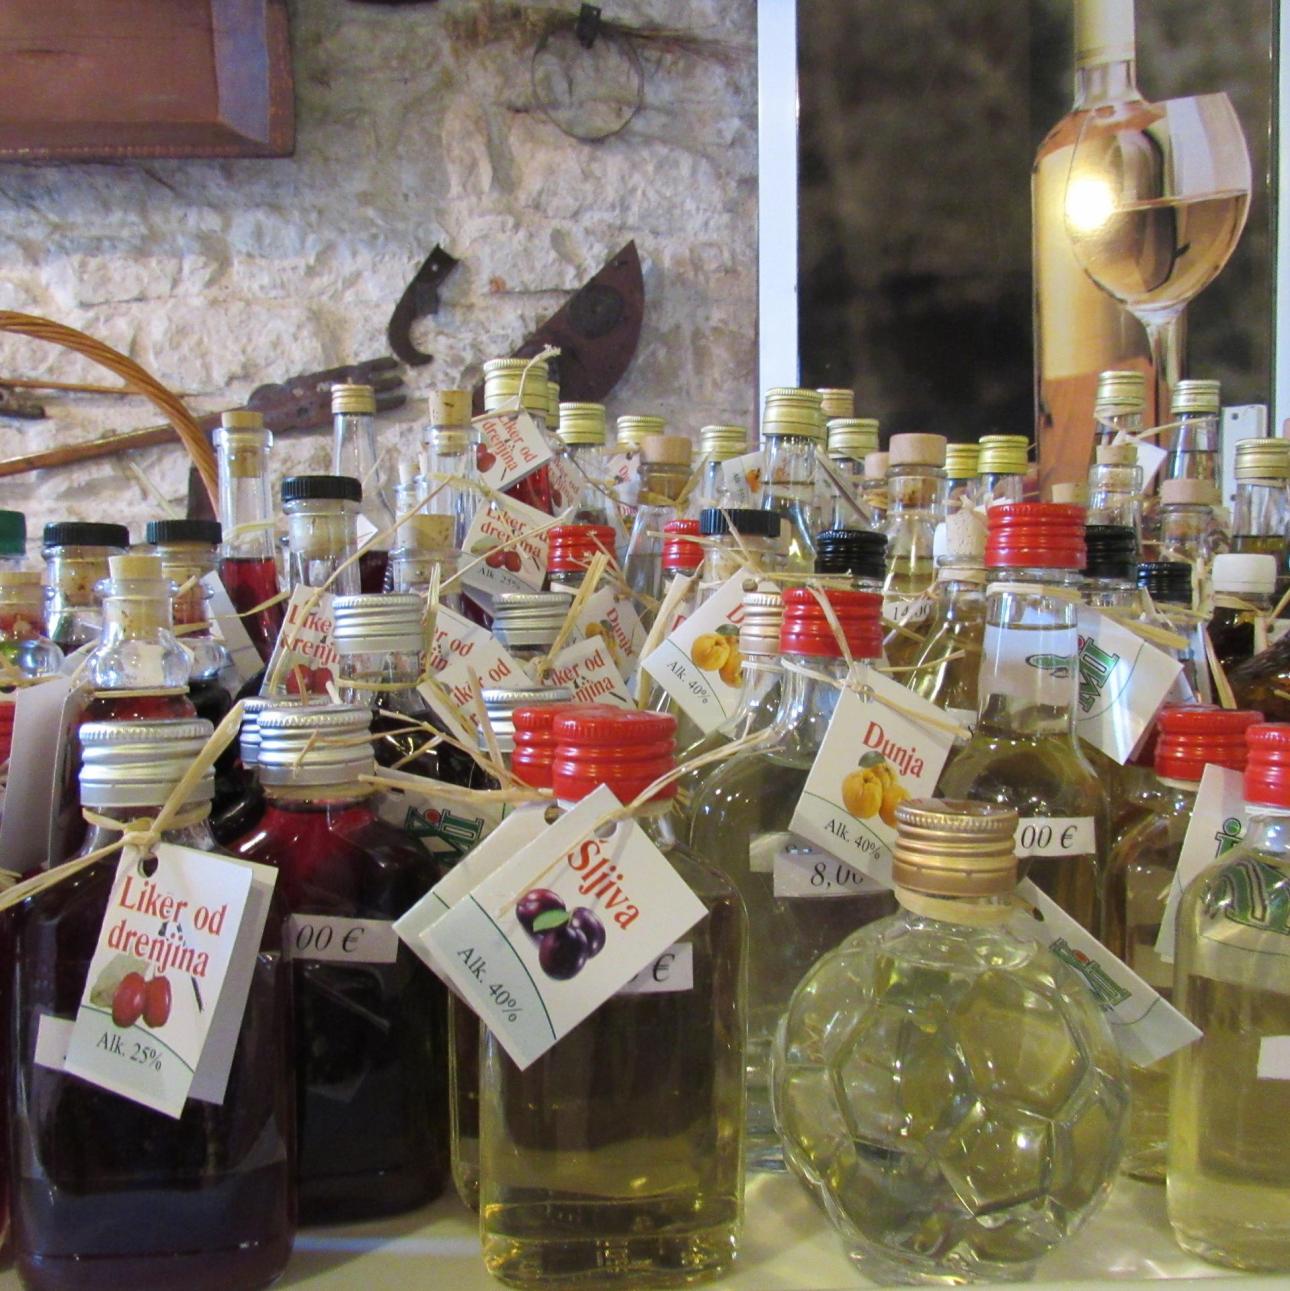 Olivenolie og honningvin er nogle af de lokale specialiteter, som man bør lægge gane til.